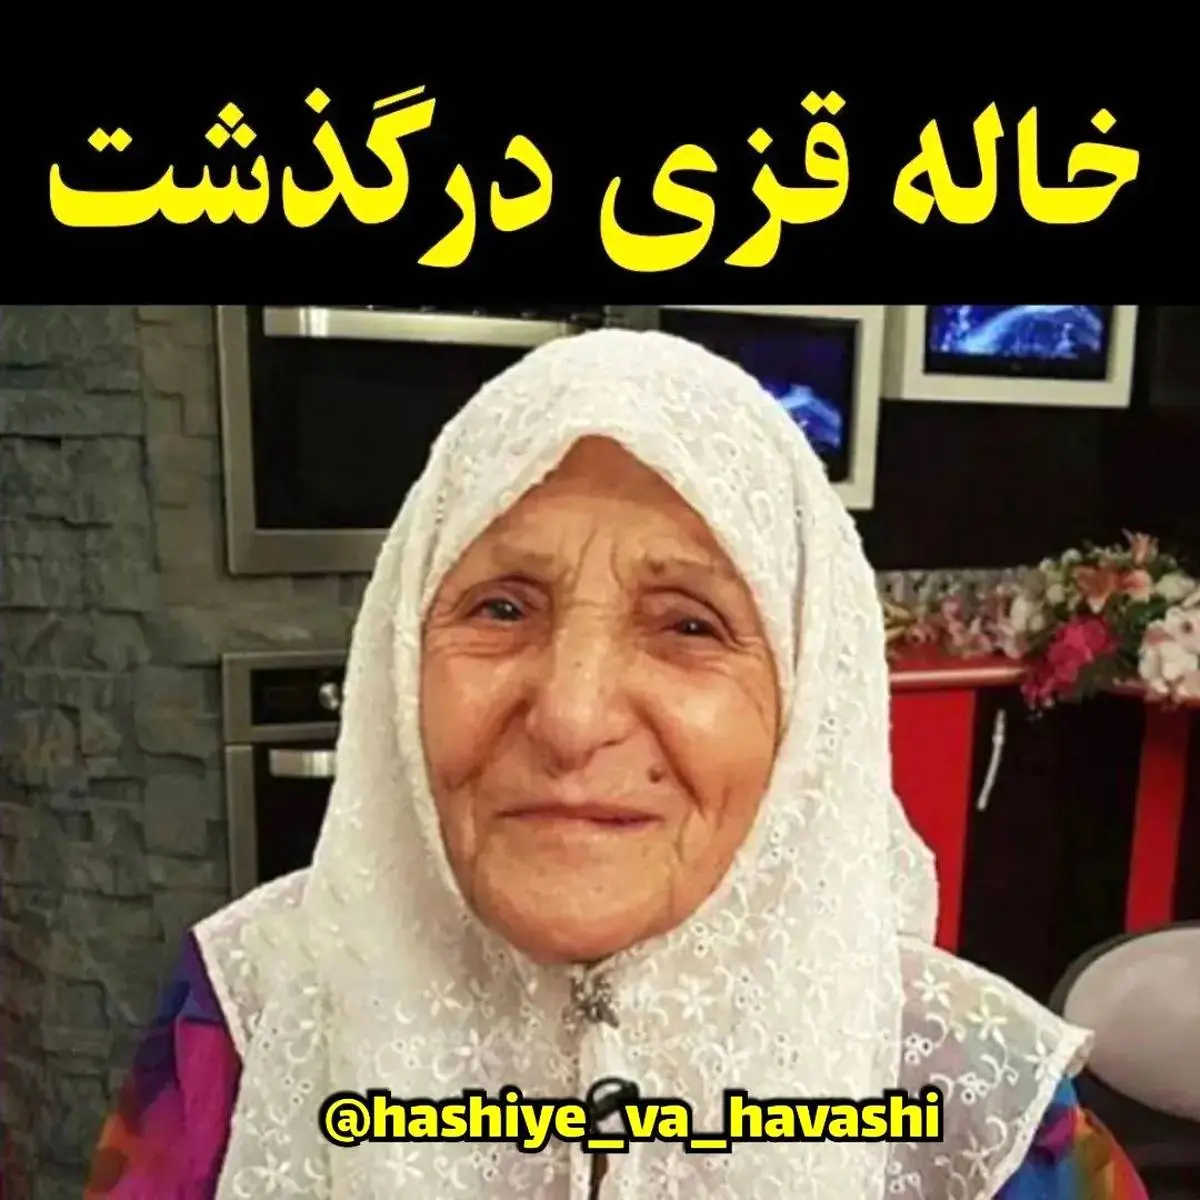 گلگی حلیمه سعیدی از شوهرش | حلیمه سعیدی درگذشت